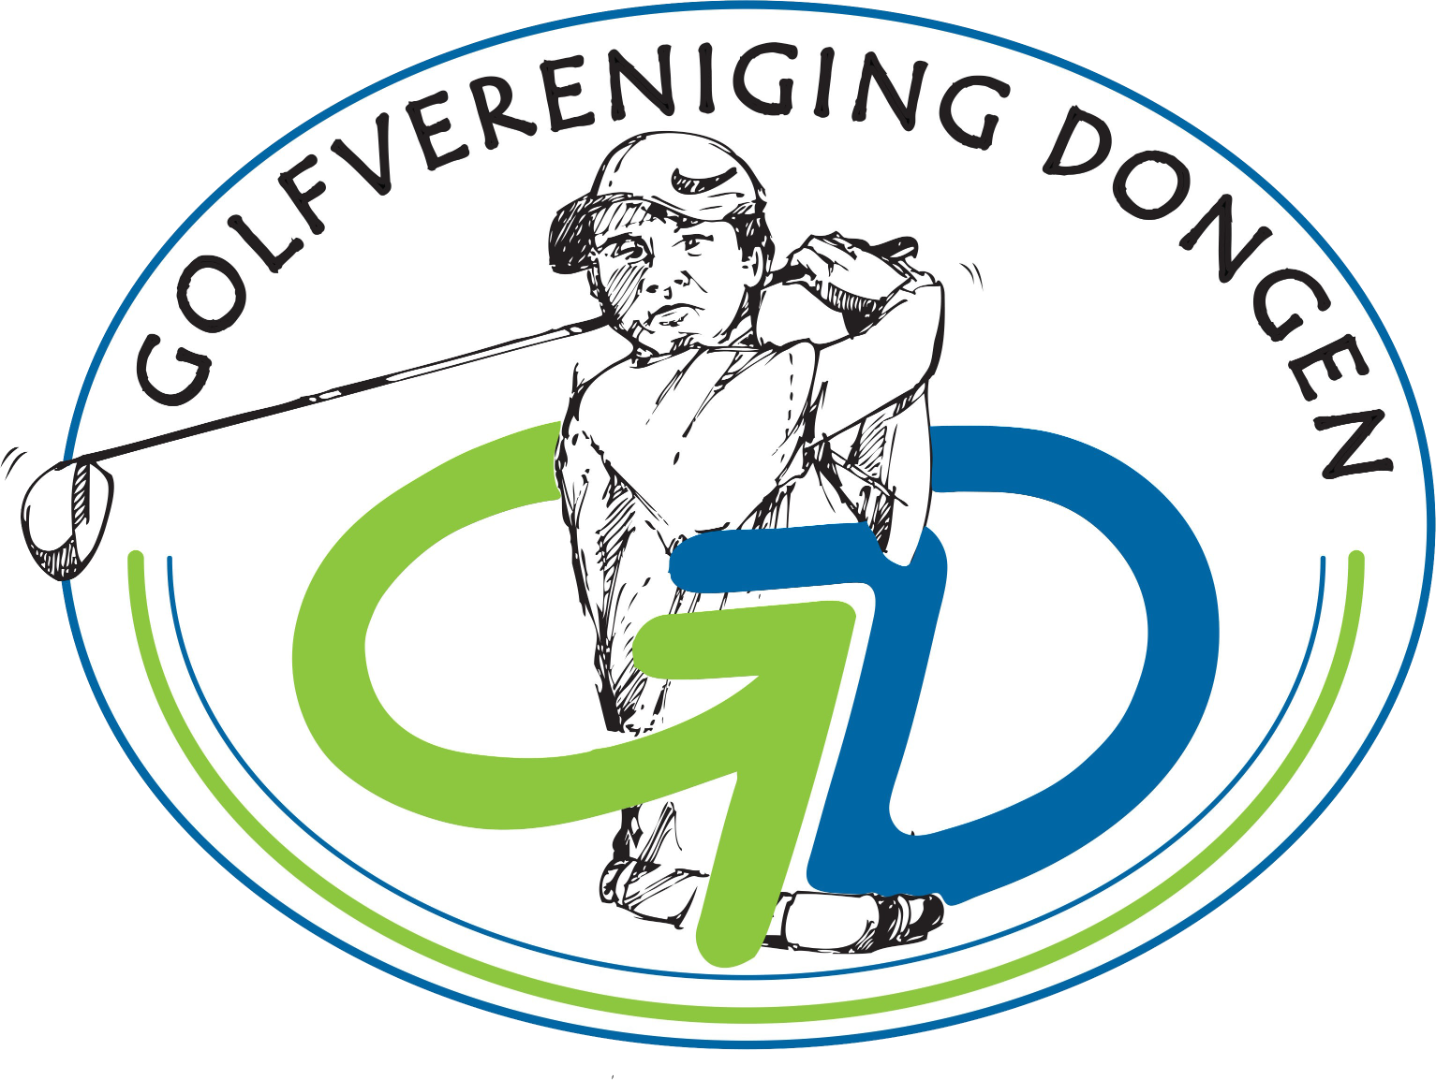 Golfvereniging Dongen